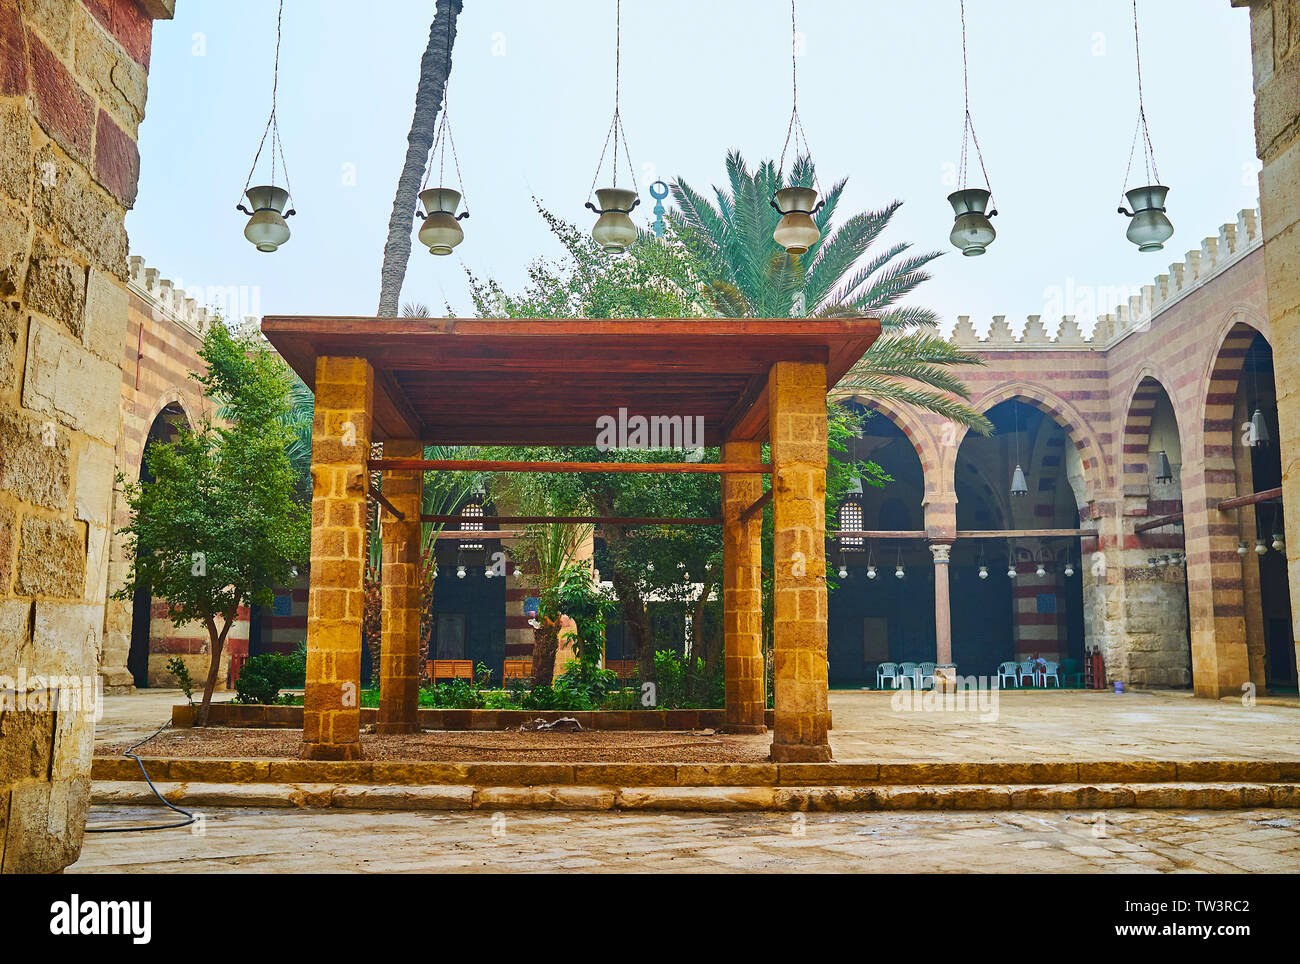 Il Cairo, Egitto - 22 dicembre 2017: il medievale Aqsunqur (blu) Moschea con scenografico cortile ombreggiato e arcade in stile ablaq (con striping) pareti, da dicembre Foto Stock